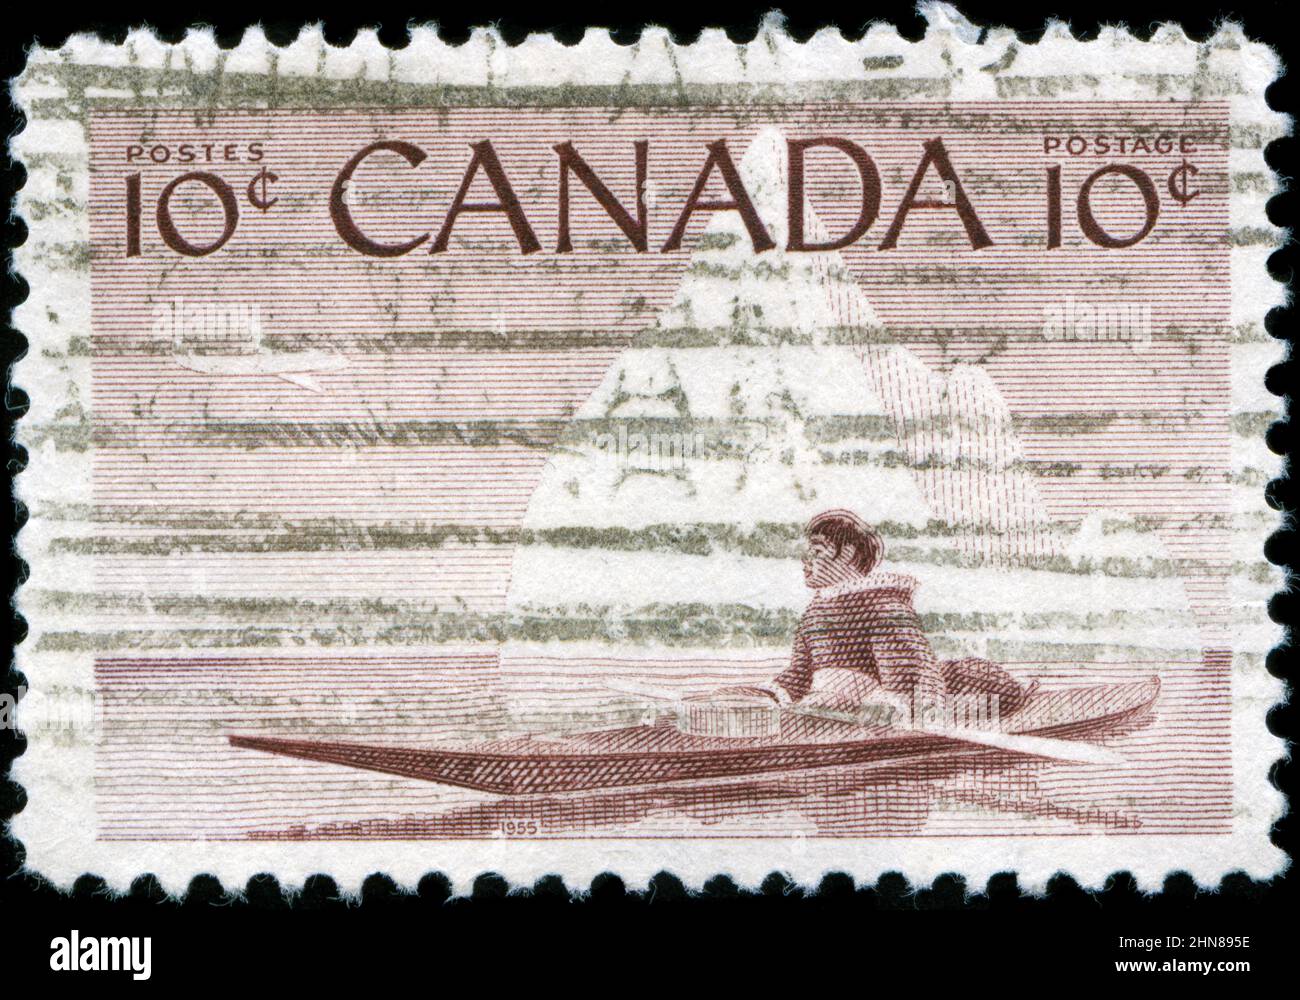 Timbre-poste du Canada dans la série des Canadiens, de la faune et de l'industrie, publiée en 1955 Banque D'Images